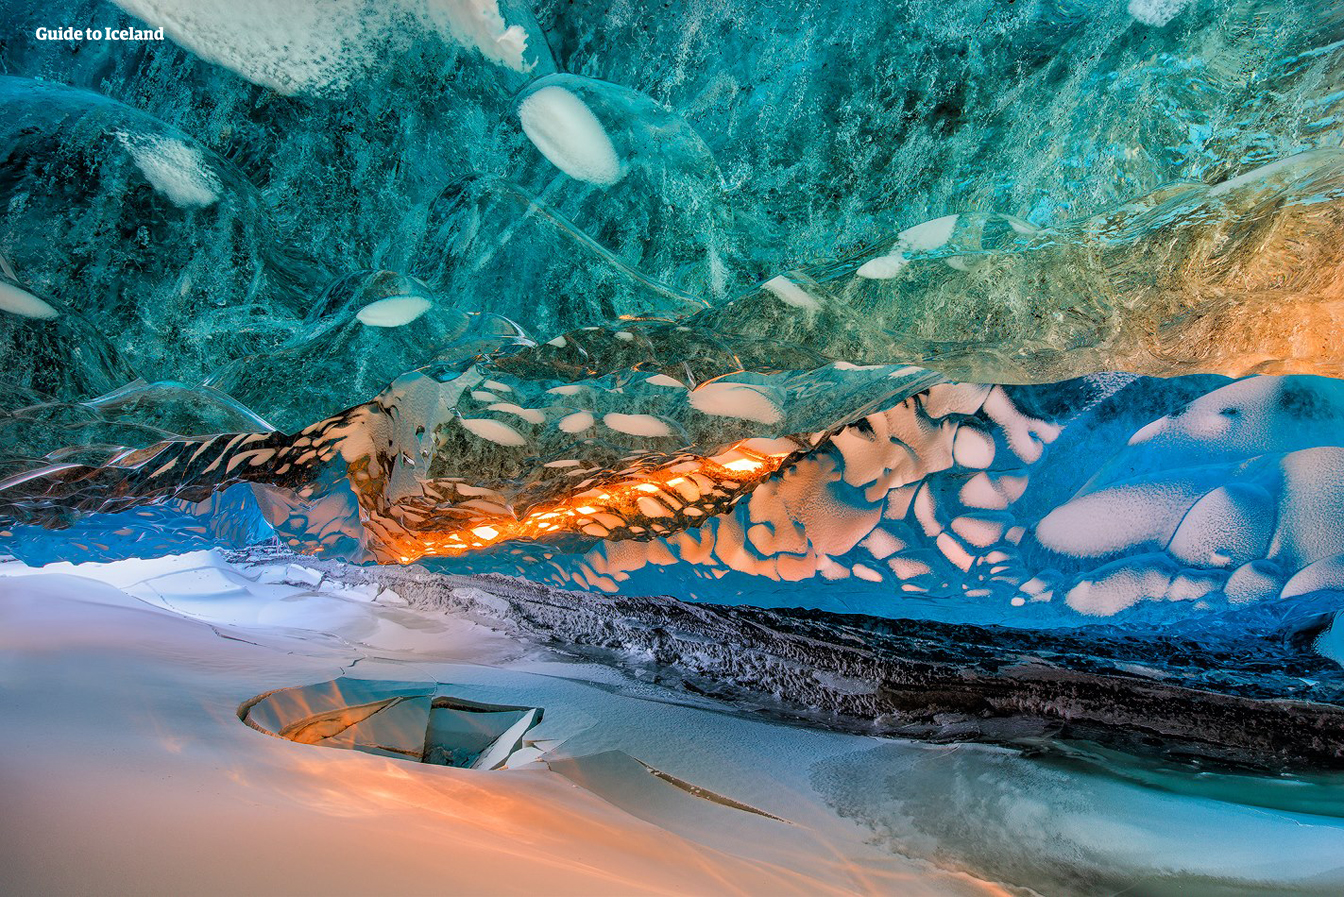 Uniquement accessibles en hiver, les grottes de glace islandaises attendent les voyageurs pour un moment d'émerveillement et de stupéfaction.